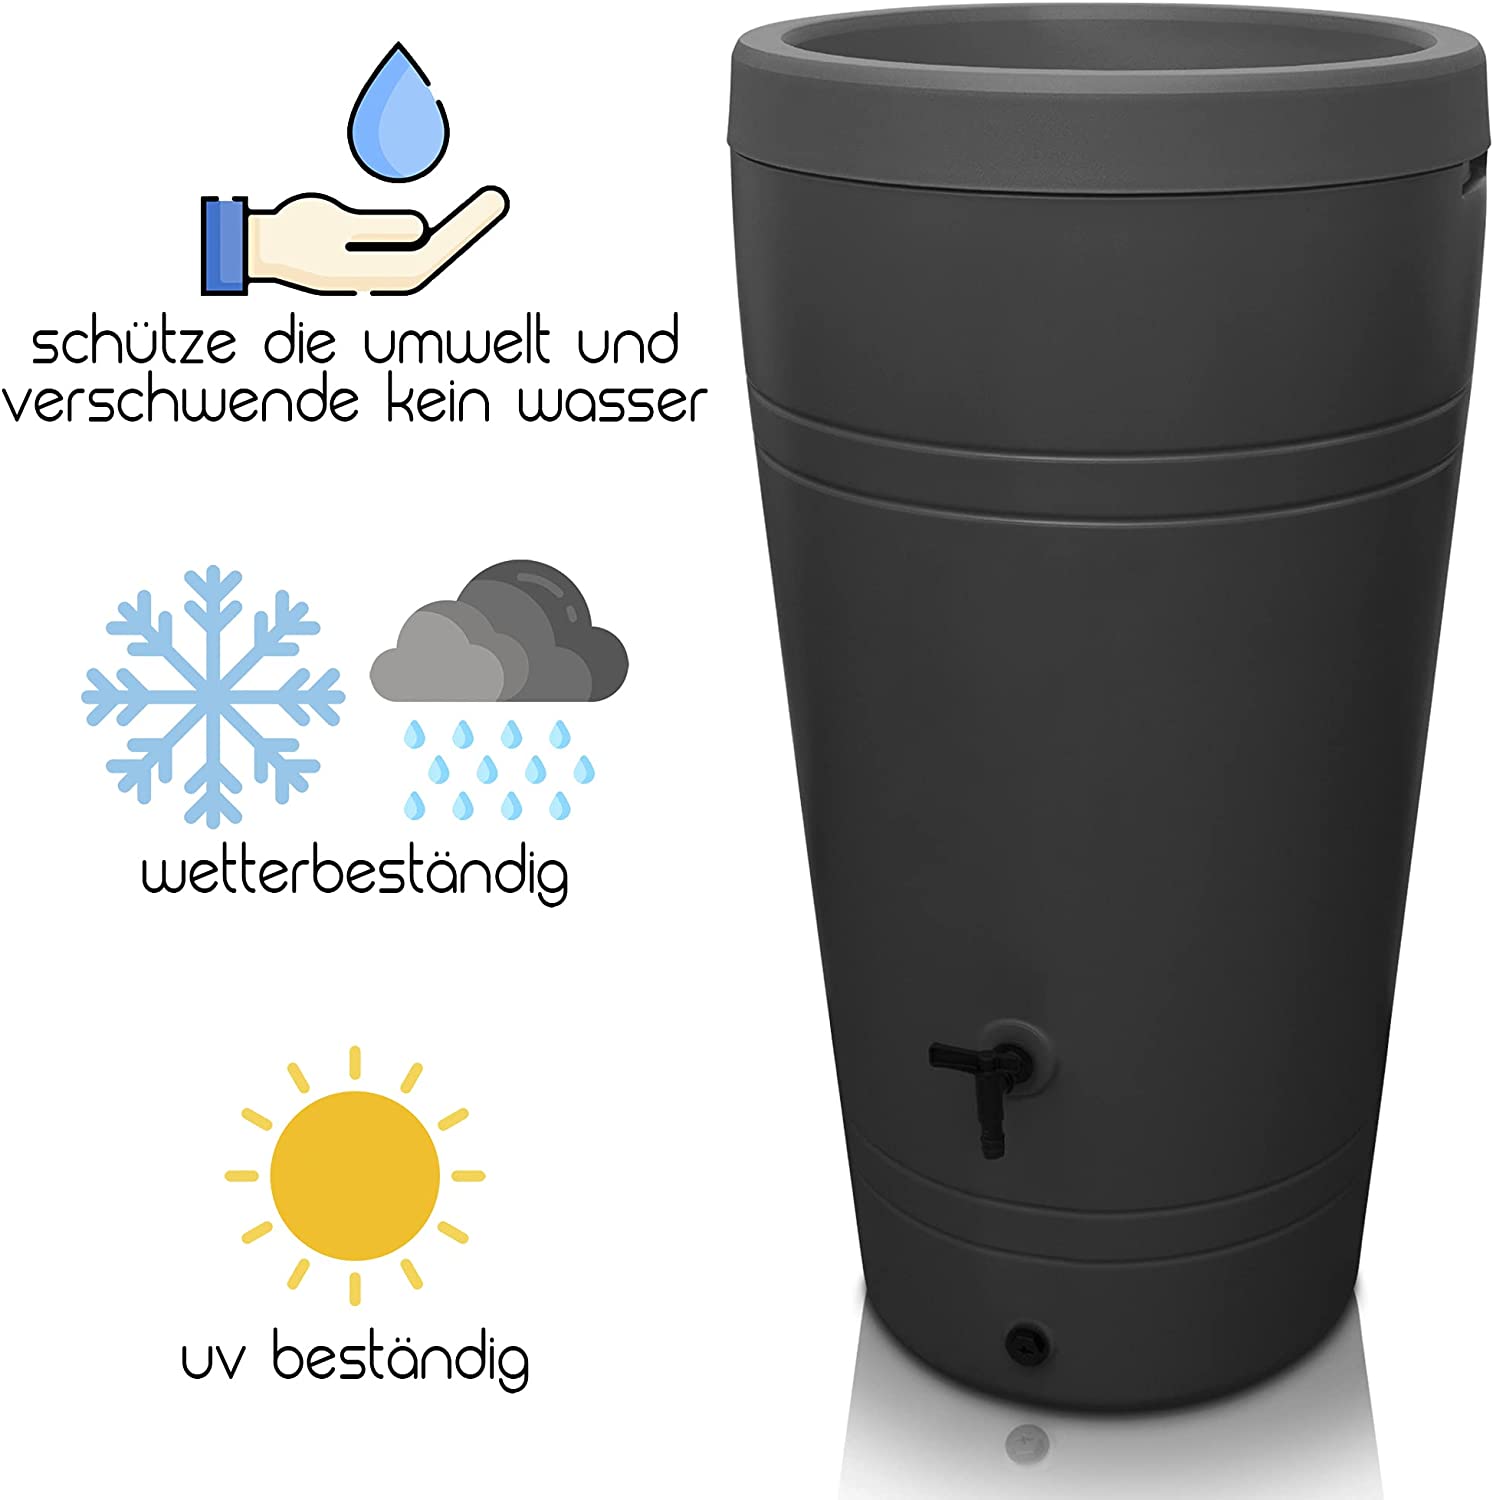 Eine frostsichere, wetterbeständige YourCasa Regentonne 230 Liter [Decore Design] mit UV-Schutz und Funktionen zum Sammeln von Regenwasser.